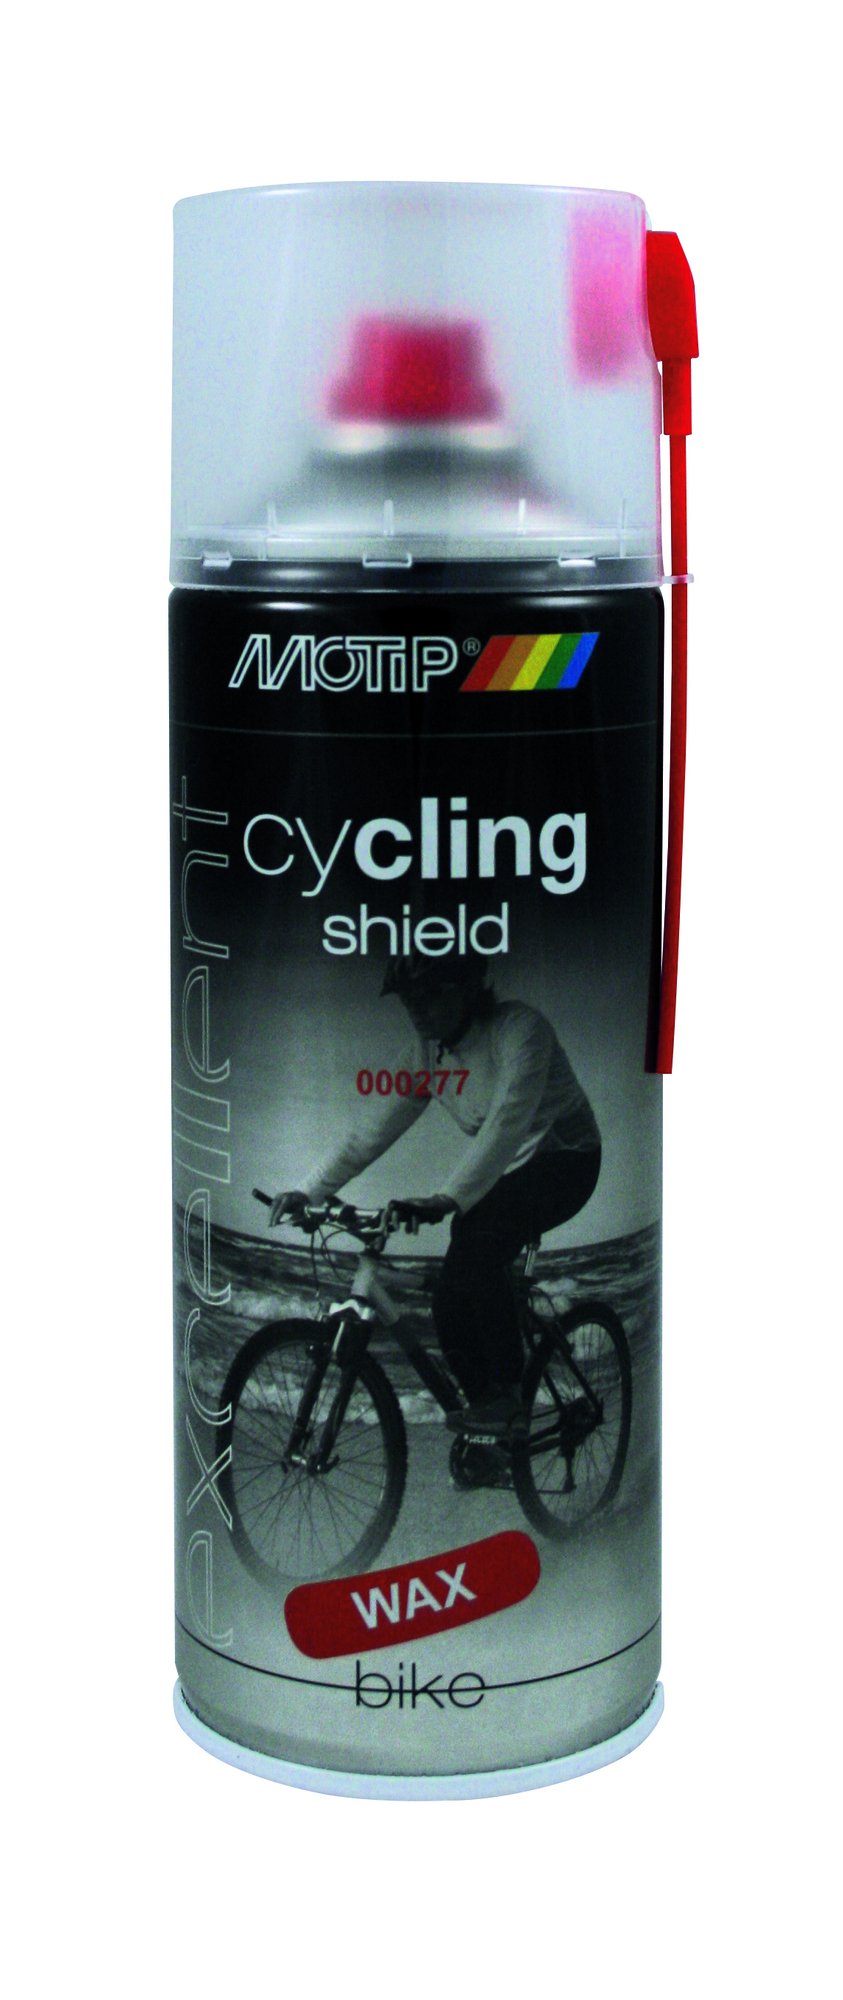 Apsauginė priemonė dviračiams nuo korozijos MOTIP, 400 ml